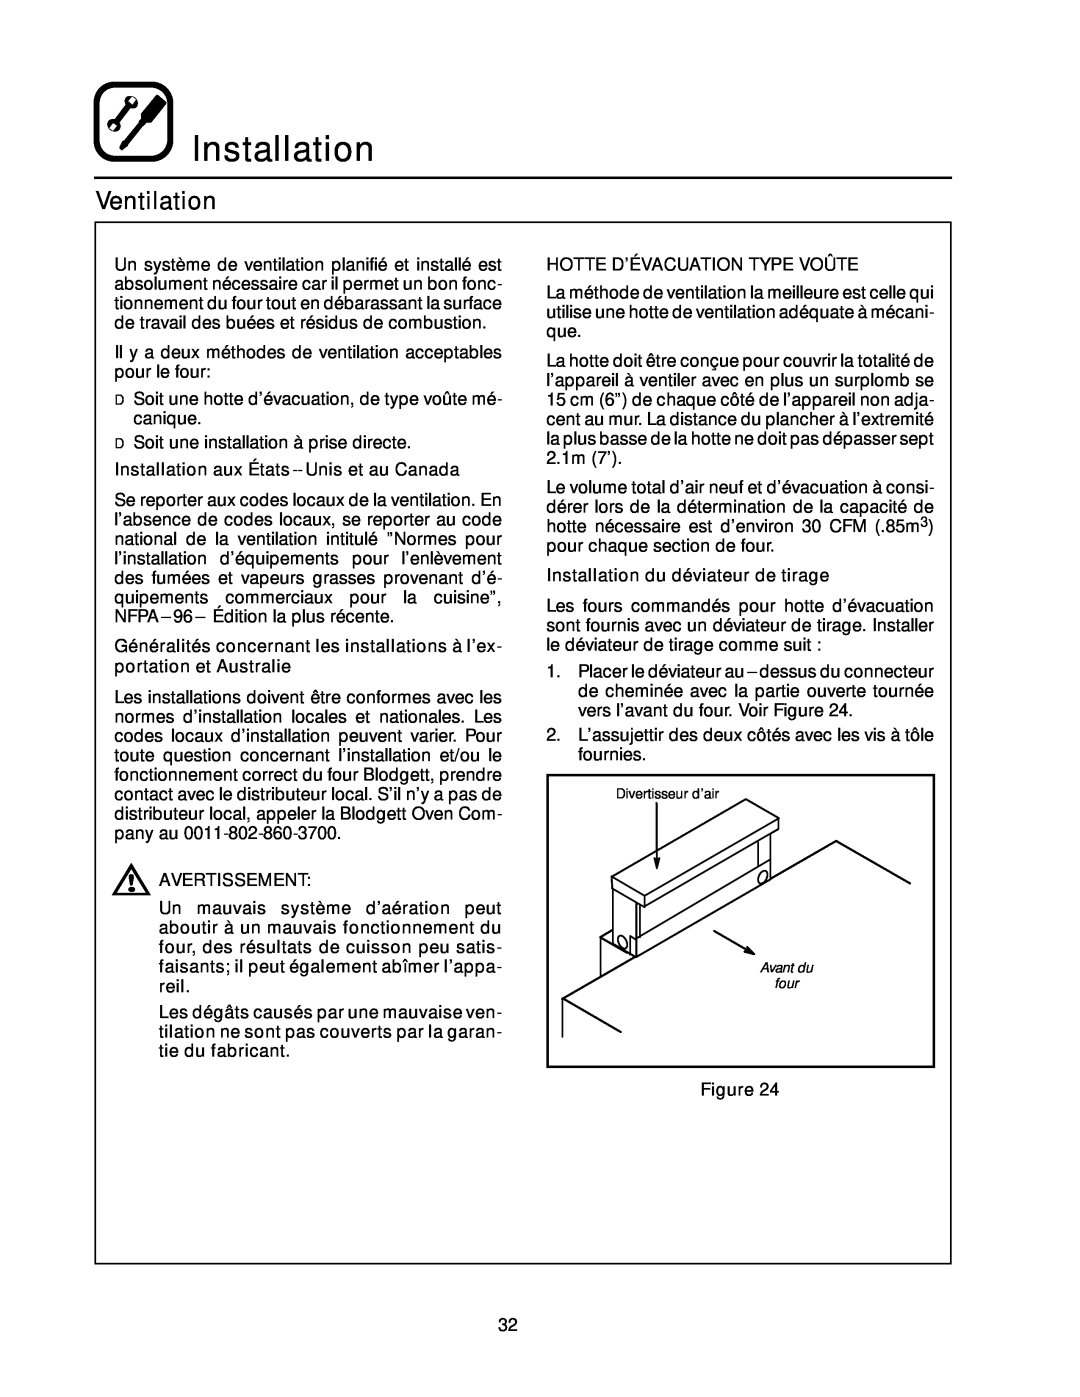 Blodgett RE Series manual Ventilation, Installation aux États-- Unis et au Canada, Avertissement 